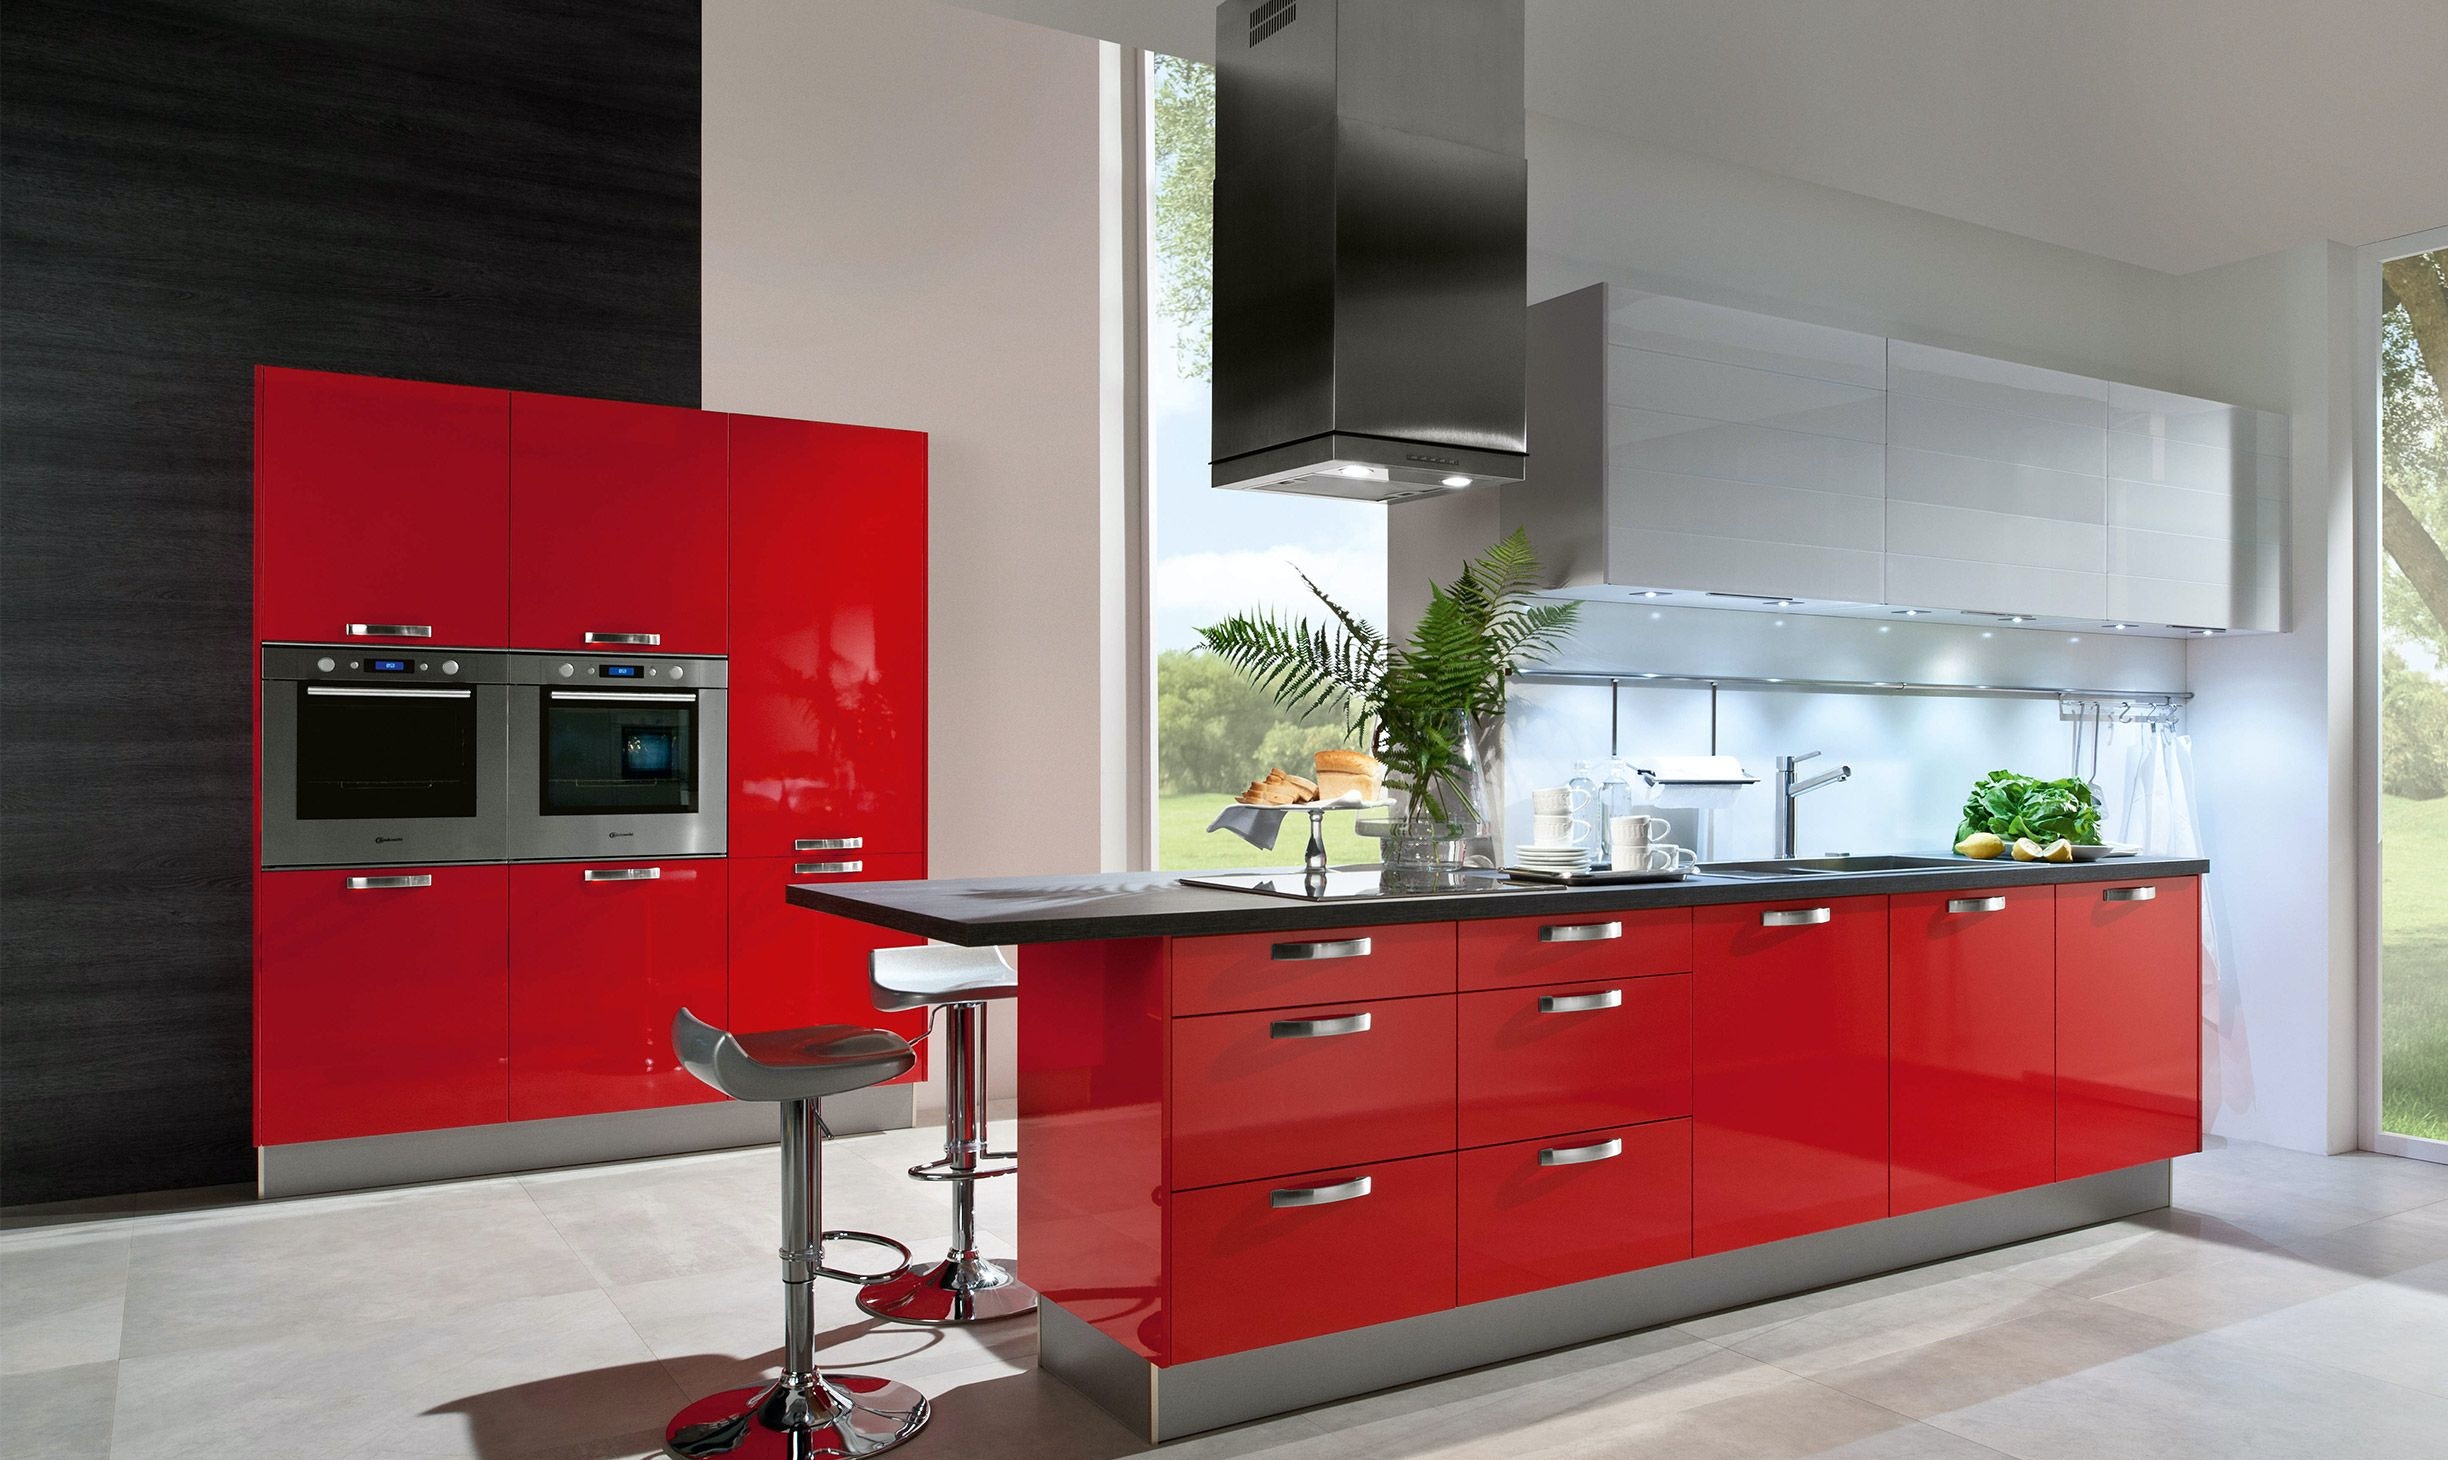 Rode hoogglans keuken: een echte blikvanger in uw interieur.